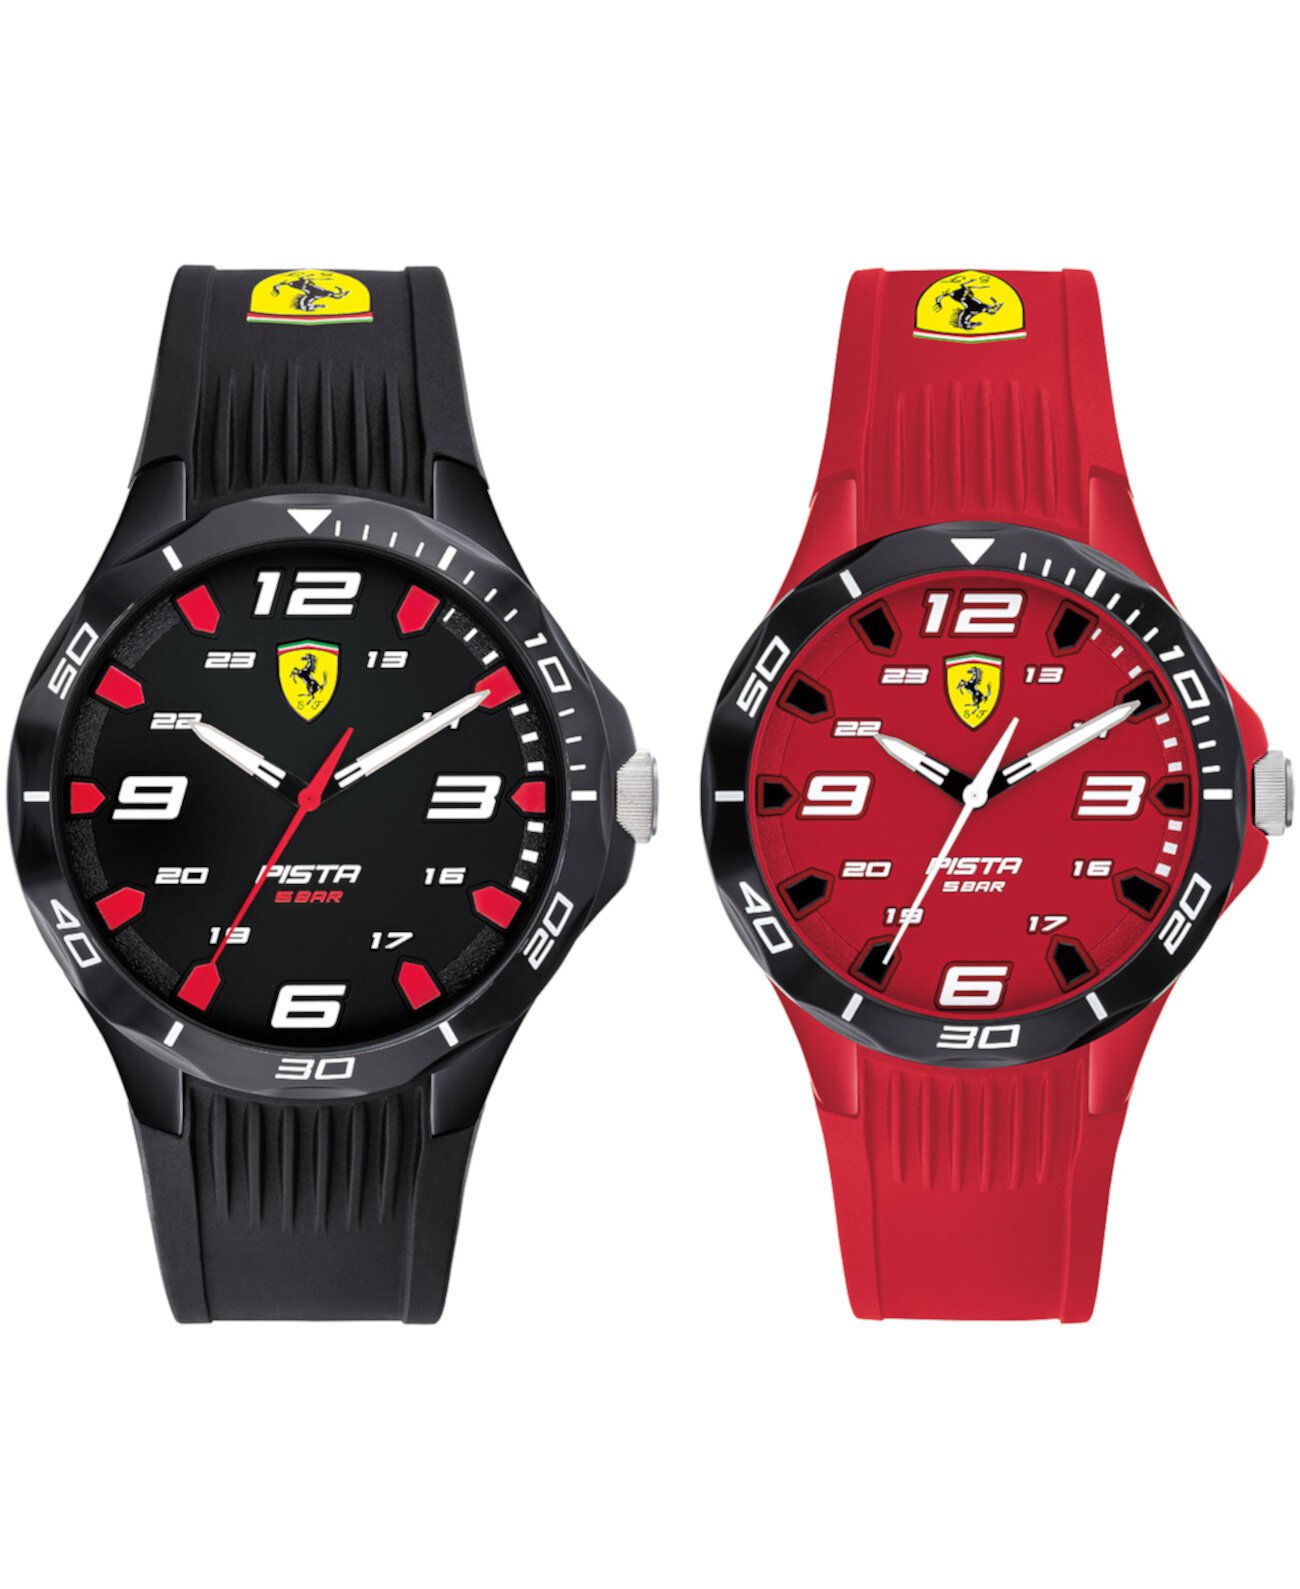 Мужские часы Pista с черным и красным силиконовым ремешком 38 мм и 44 мм, подарочный набор Ferrari